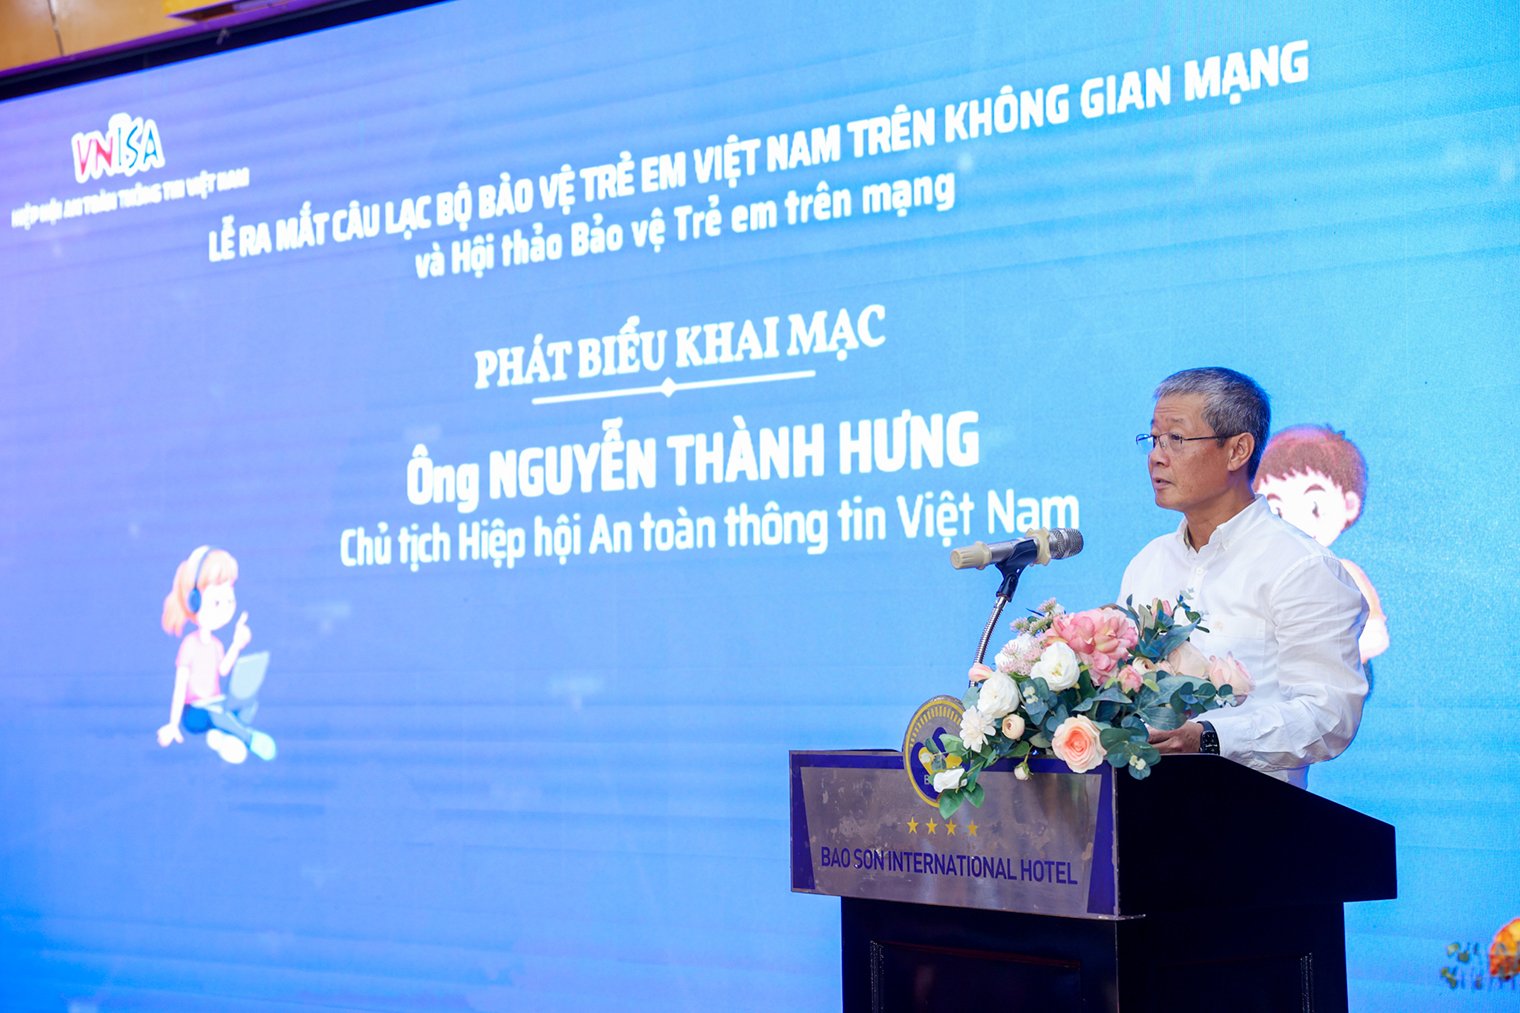 Ra mắt Câu lạc bộ bảo vệ trẻ em Việt Nam trên không gian mạng